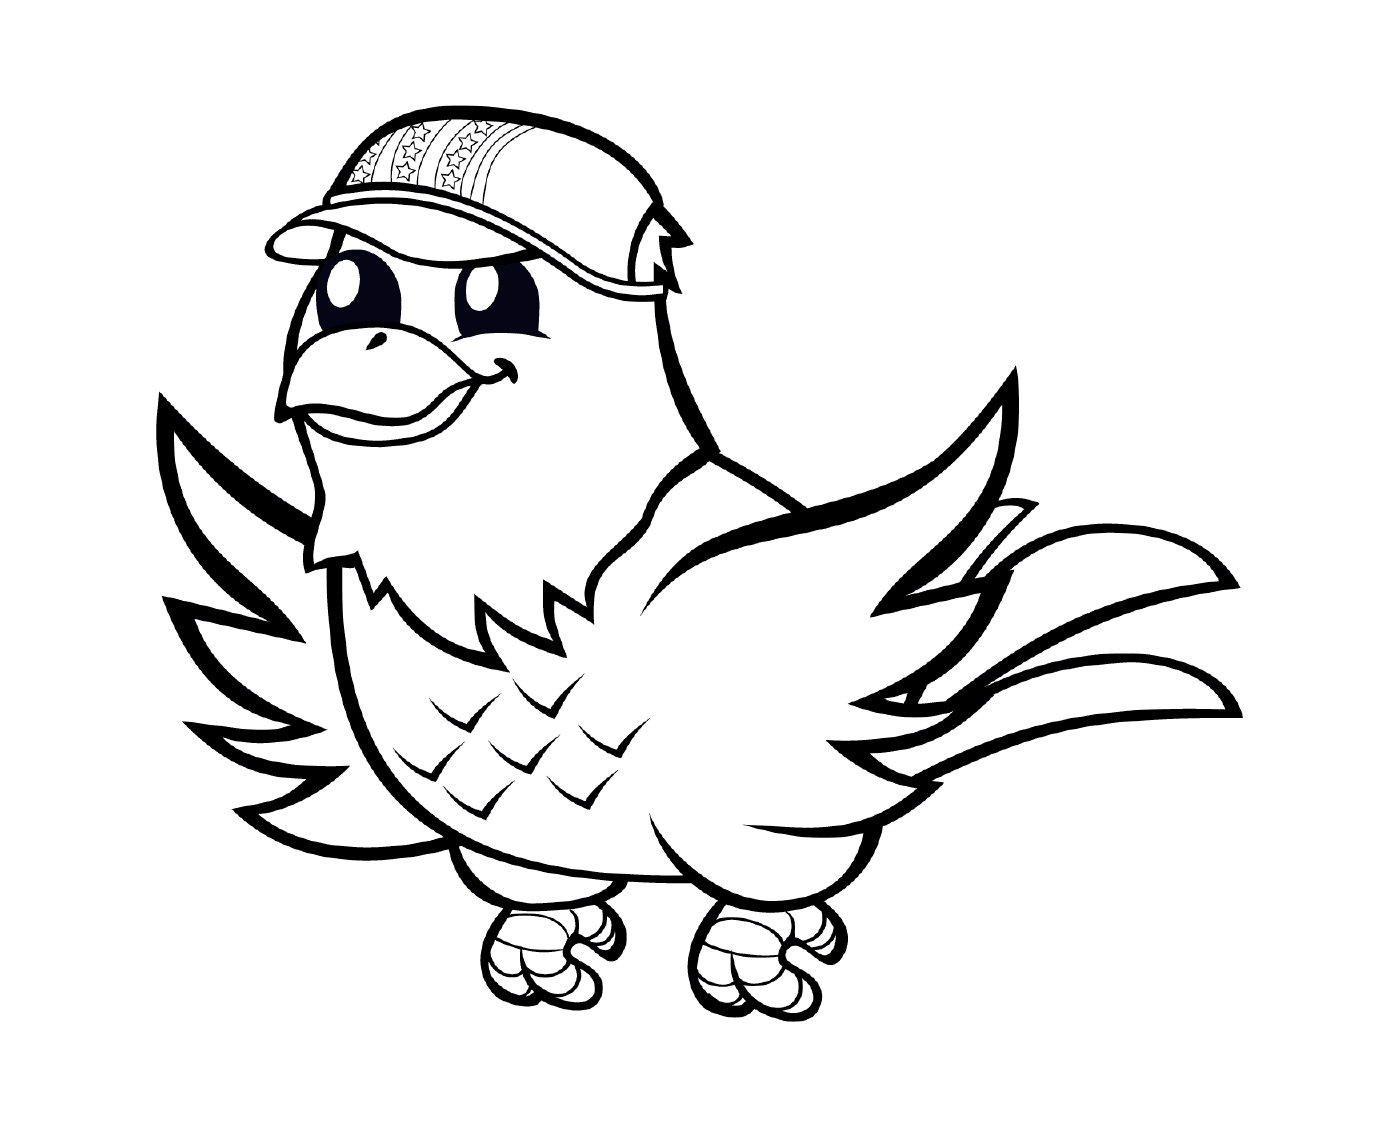  A bird wearing a baseball cap 